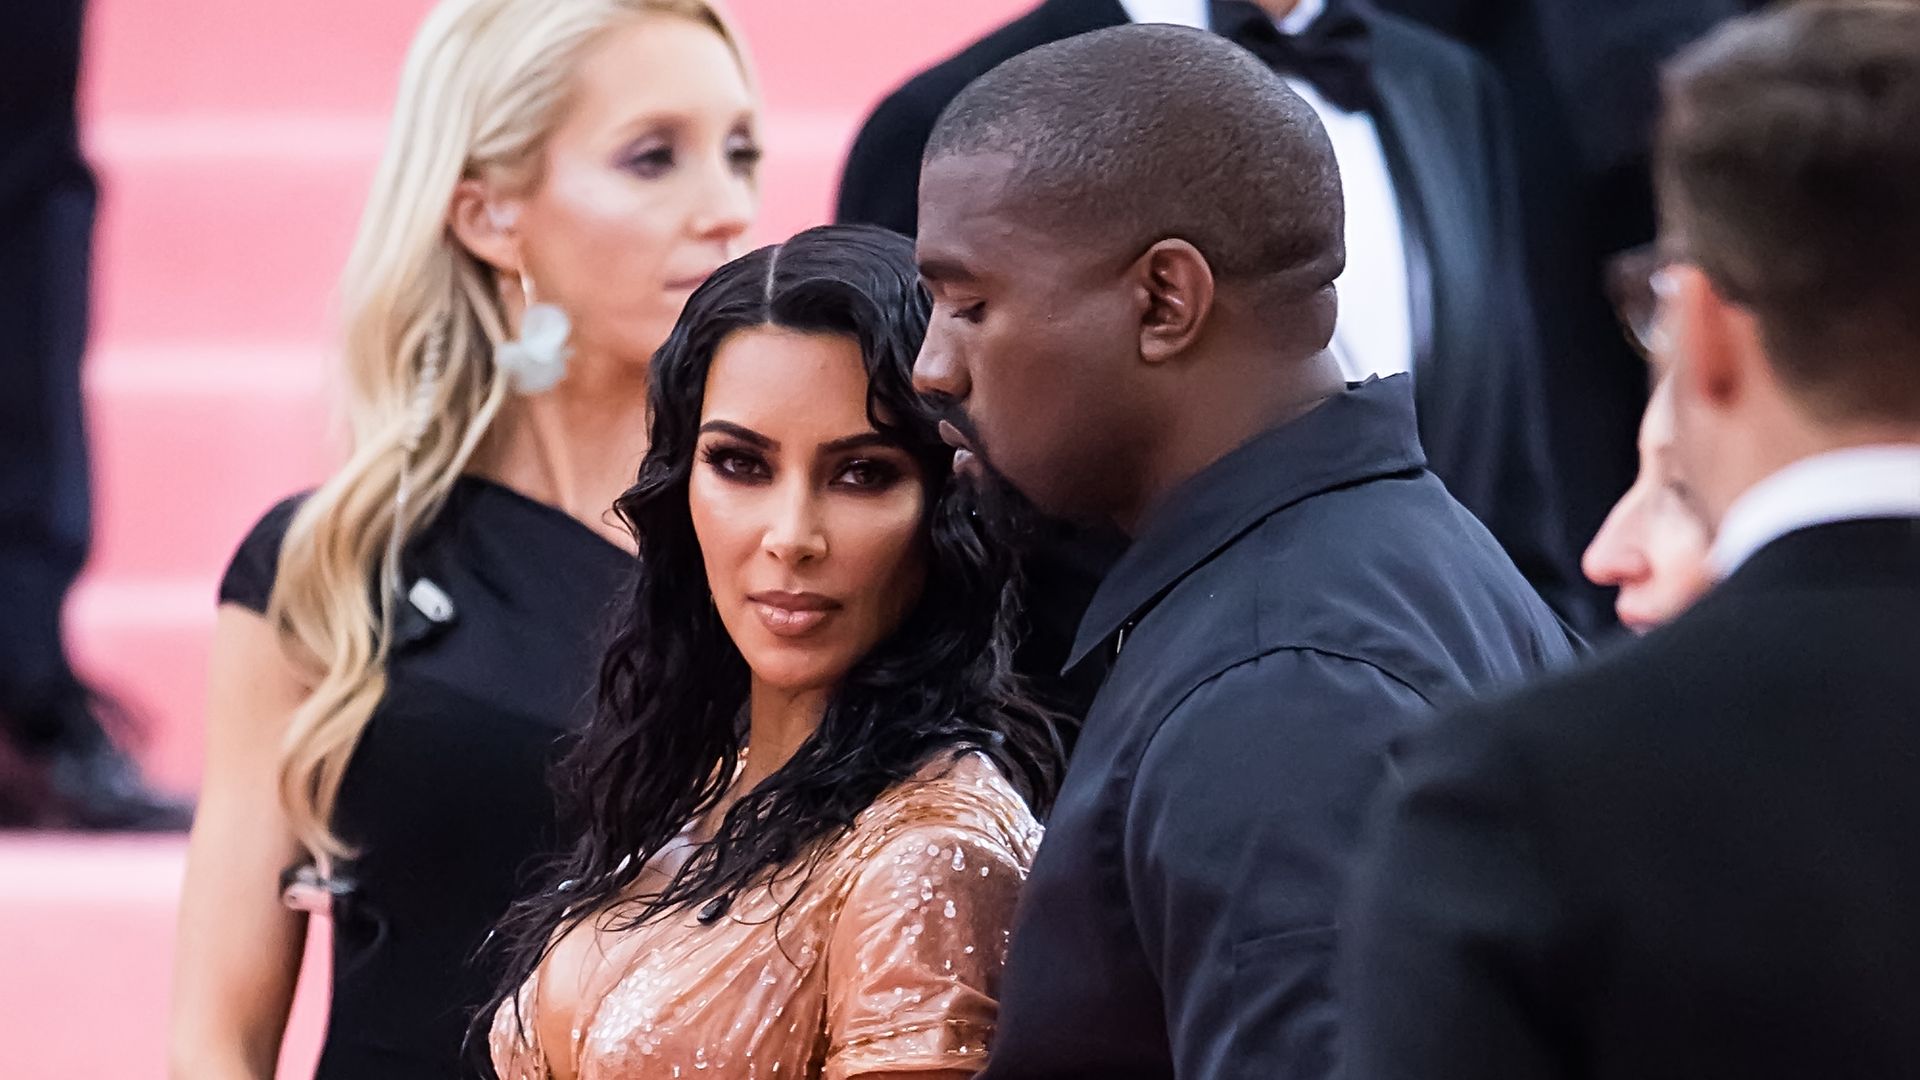 Kim Kardashian West at the Met Gala 2019